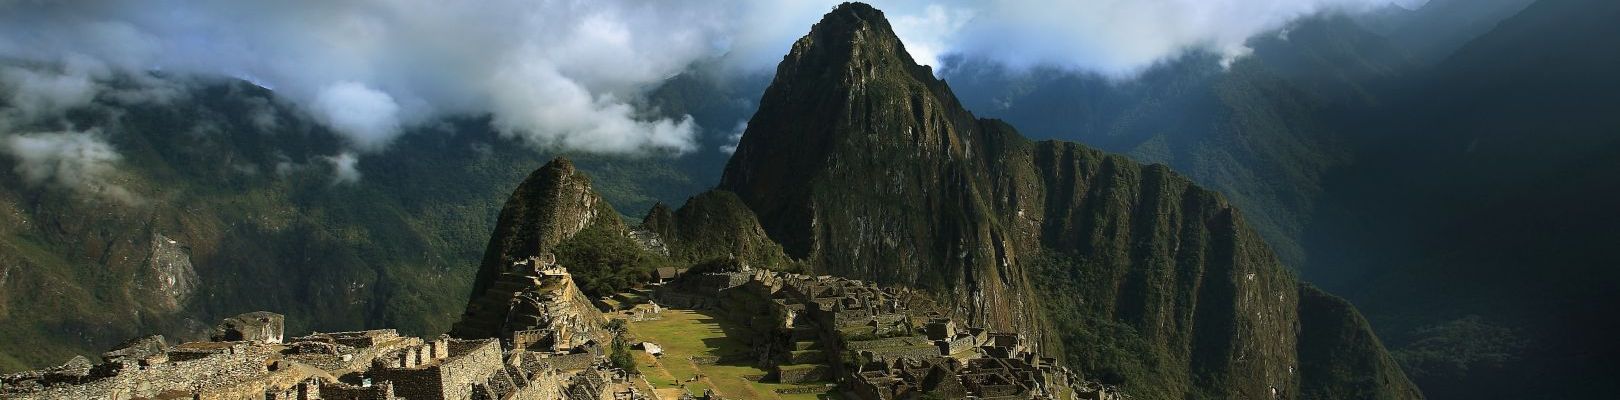 Machu Picchu - voyage Pérou - agence voyage perou